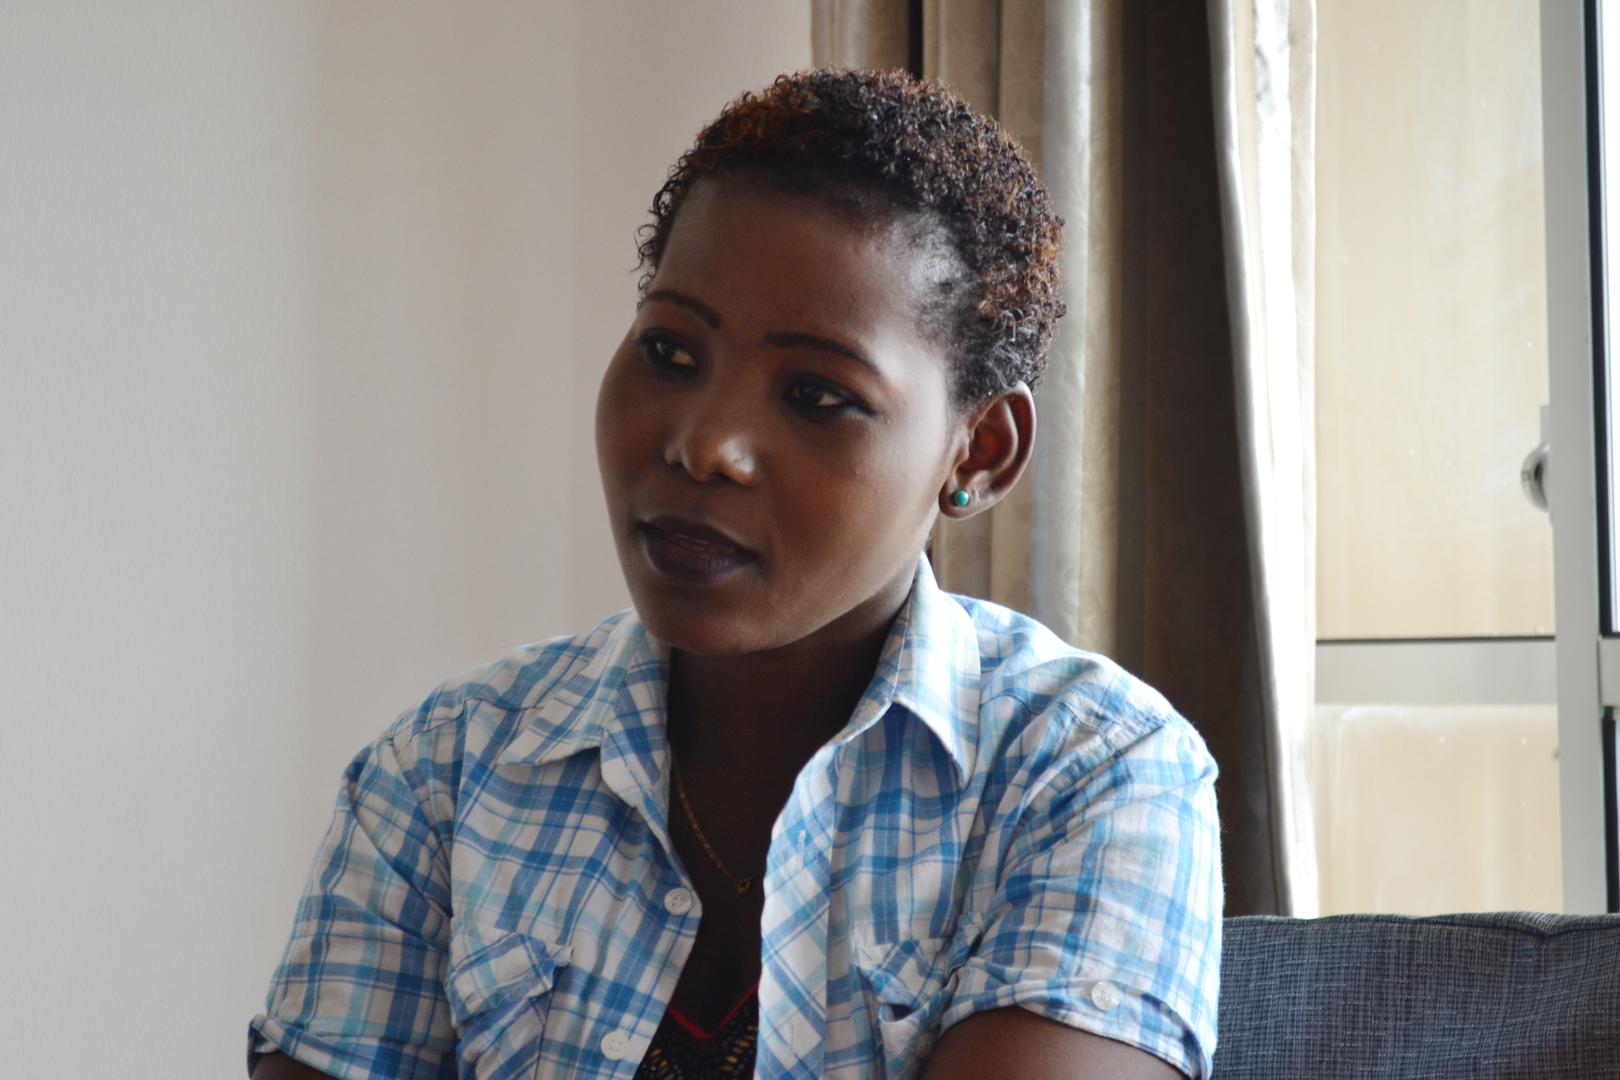  قالت أسماء (24 عاما)، واصفة حالتها بعد أشهر من العزلة والانتهاكات بينما كانت تعمل في عُمان: "شعرت بأني غير مستقرة عقليا". قالت إنه لزمها 3 أشهر للتعافي بعد أن عادت إلى تنزانيا. دار السلام، تنزانيا. © 2017 روثنا بيغم/هيومن رايتس ووتش